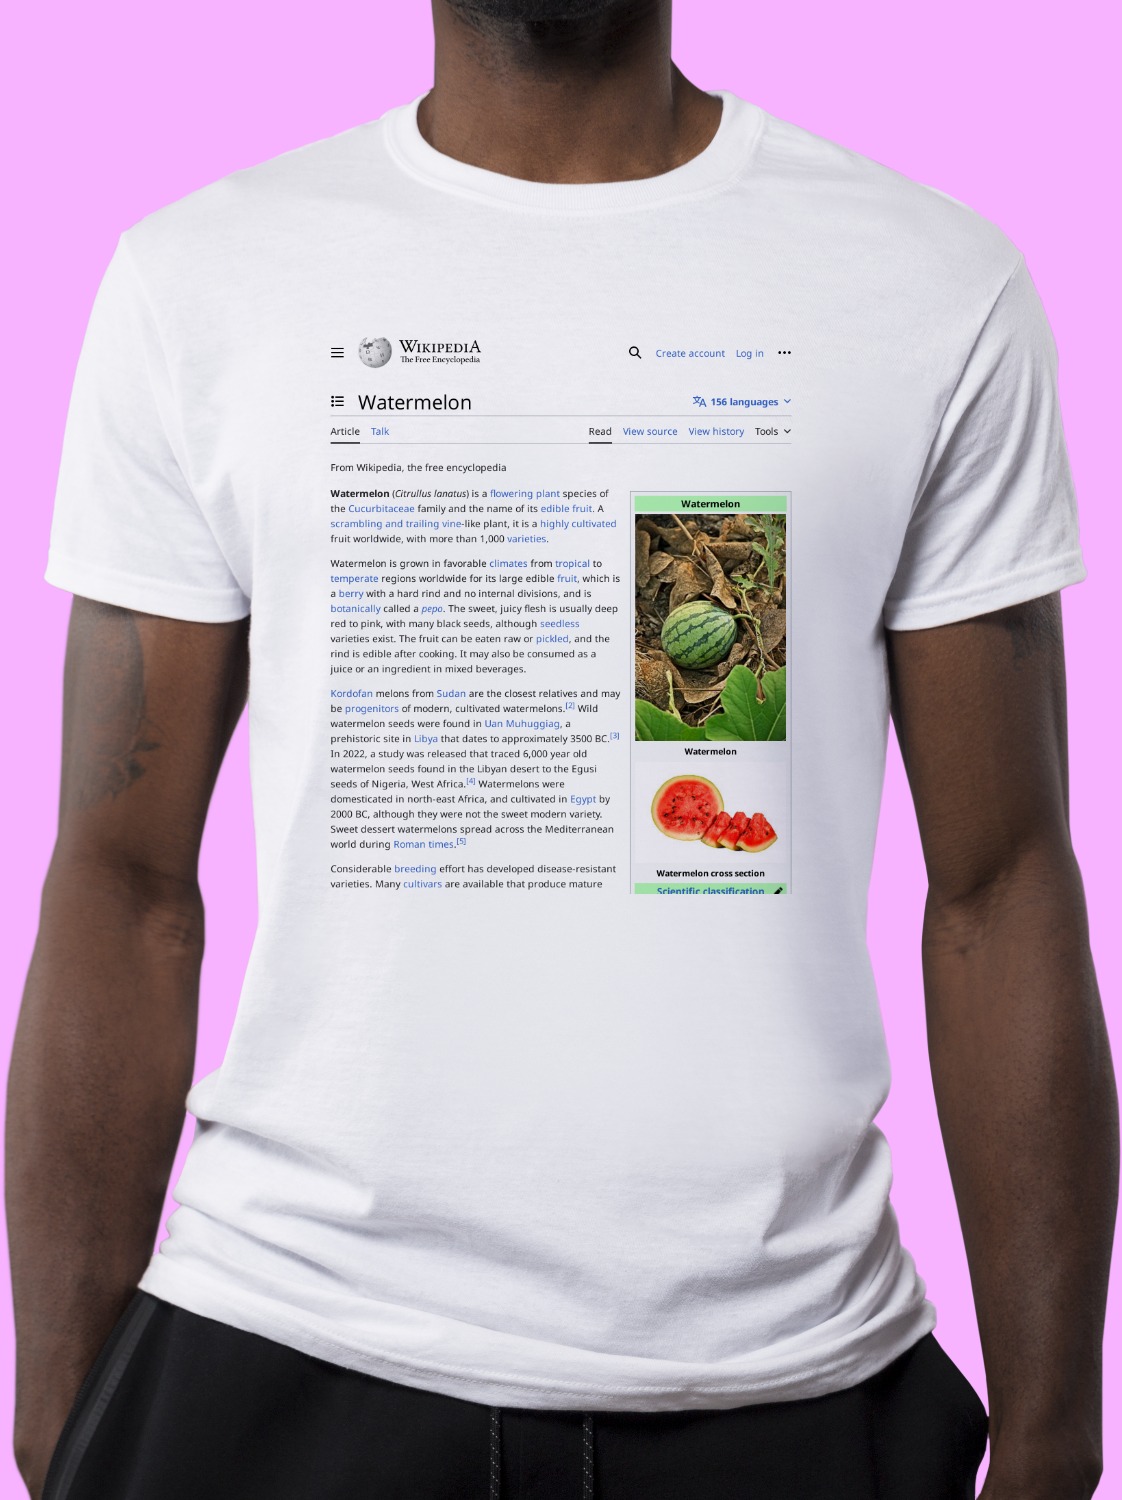 Watermelon Wikipedia Shirt